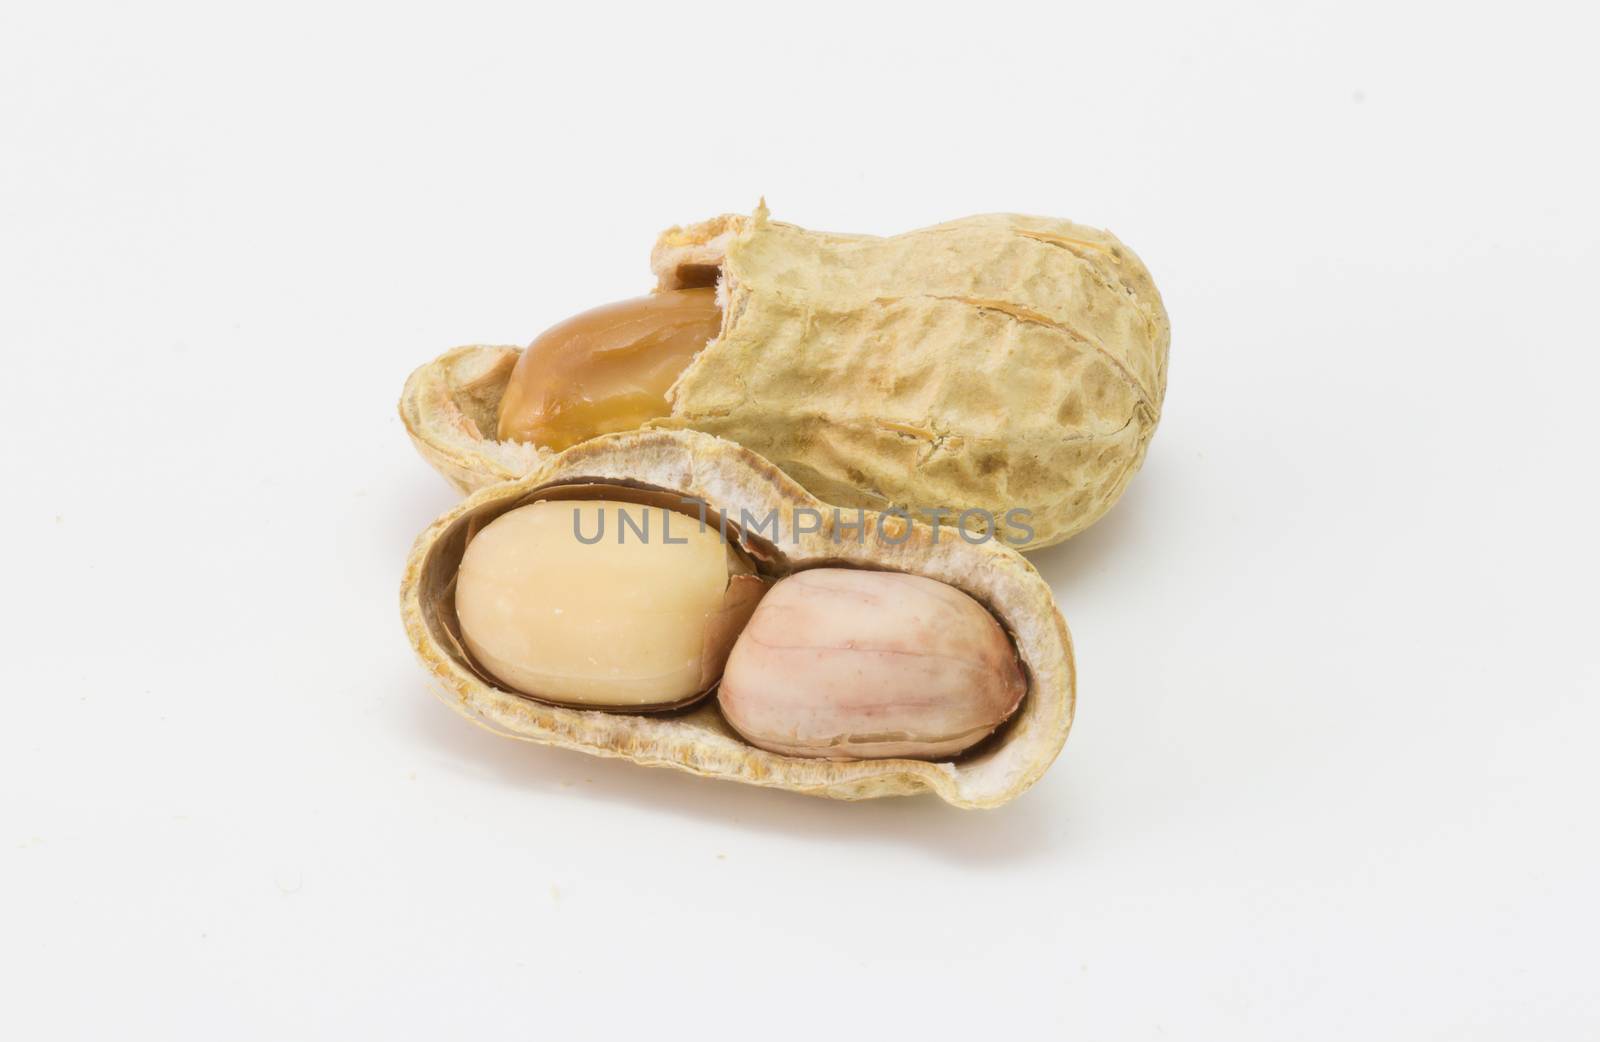 peanut isolated on white, groundnut ,dry peanut